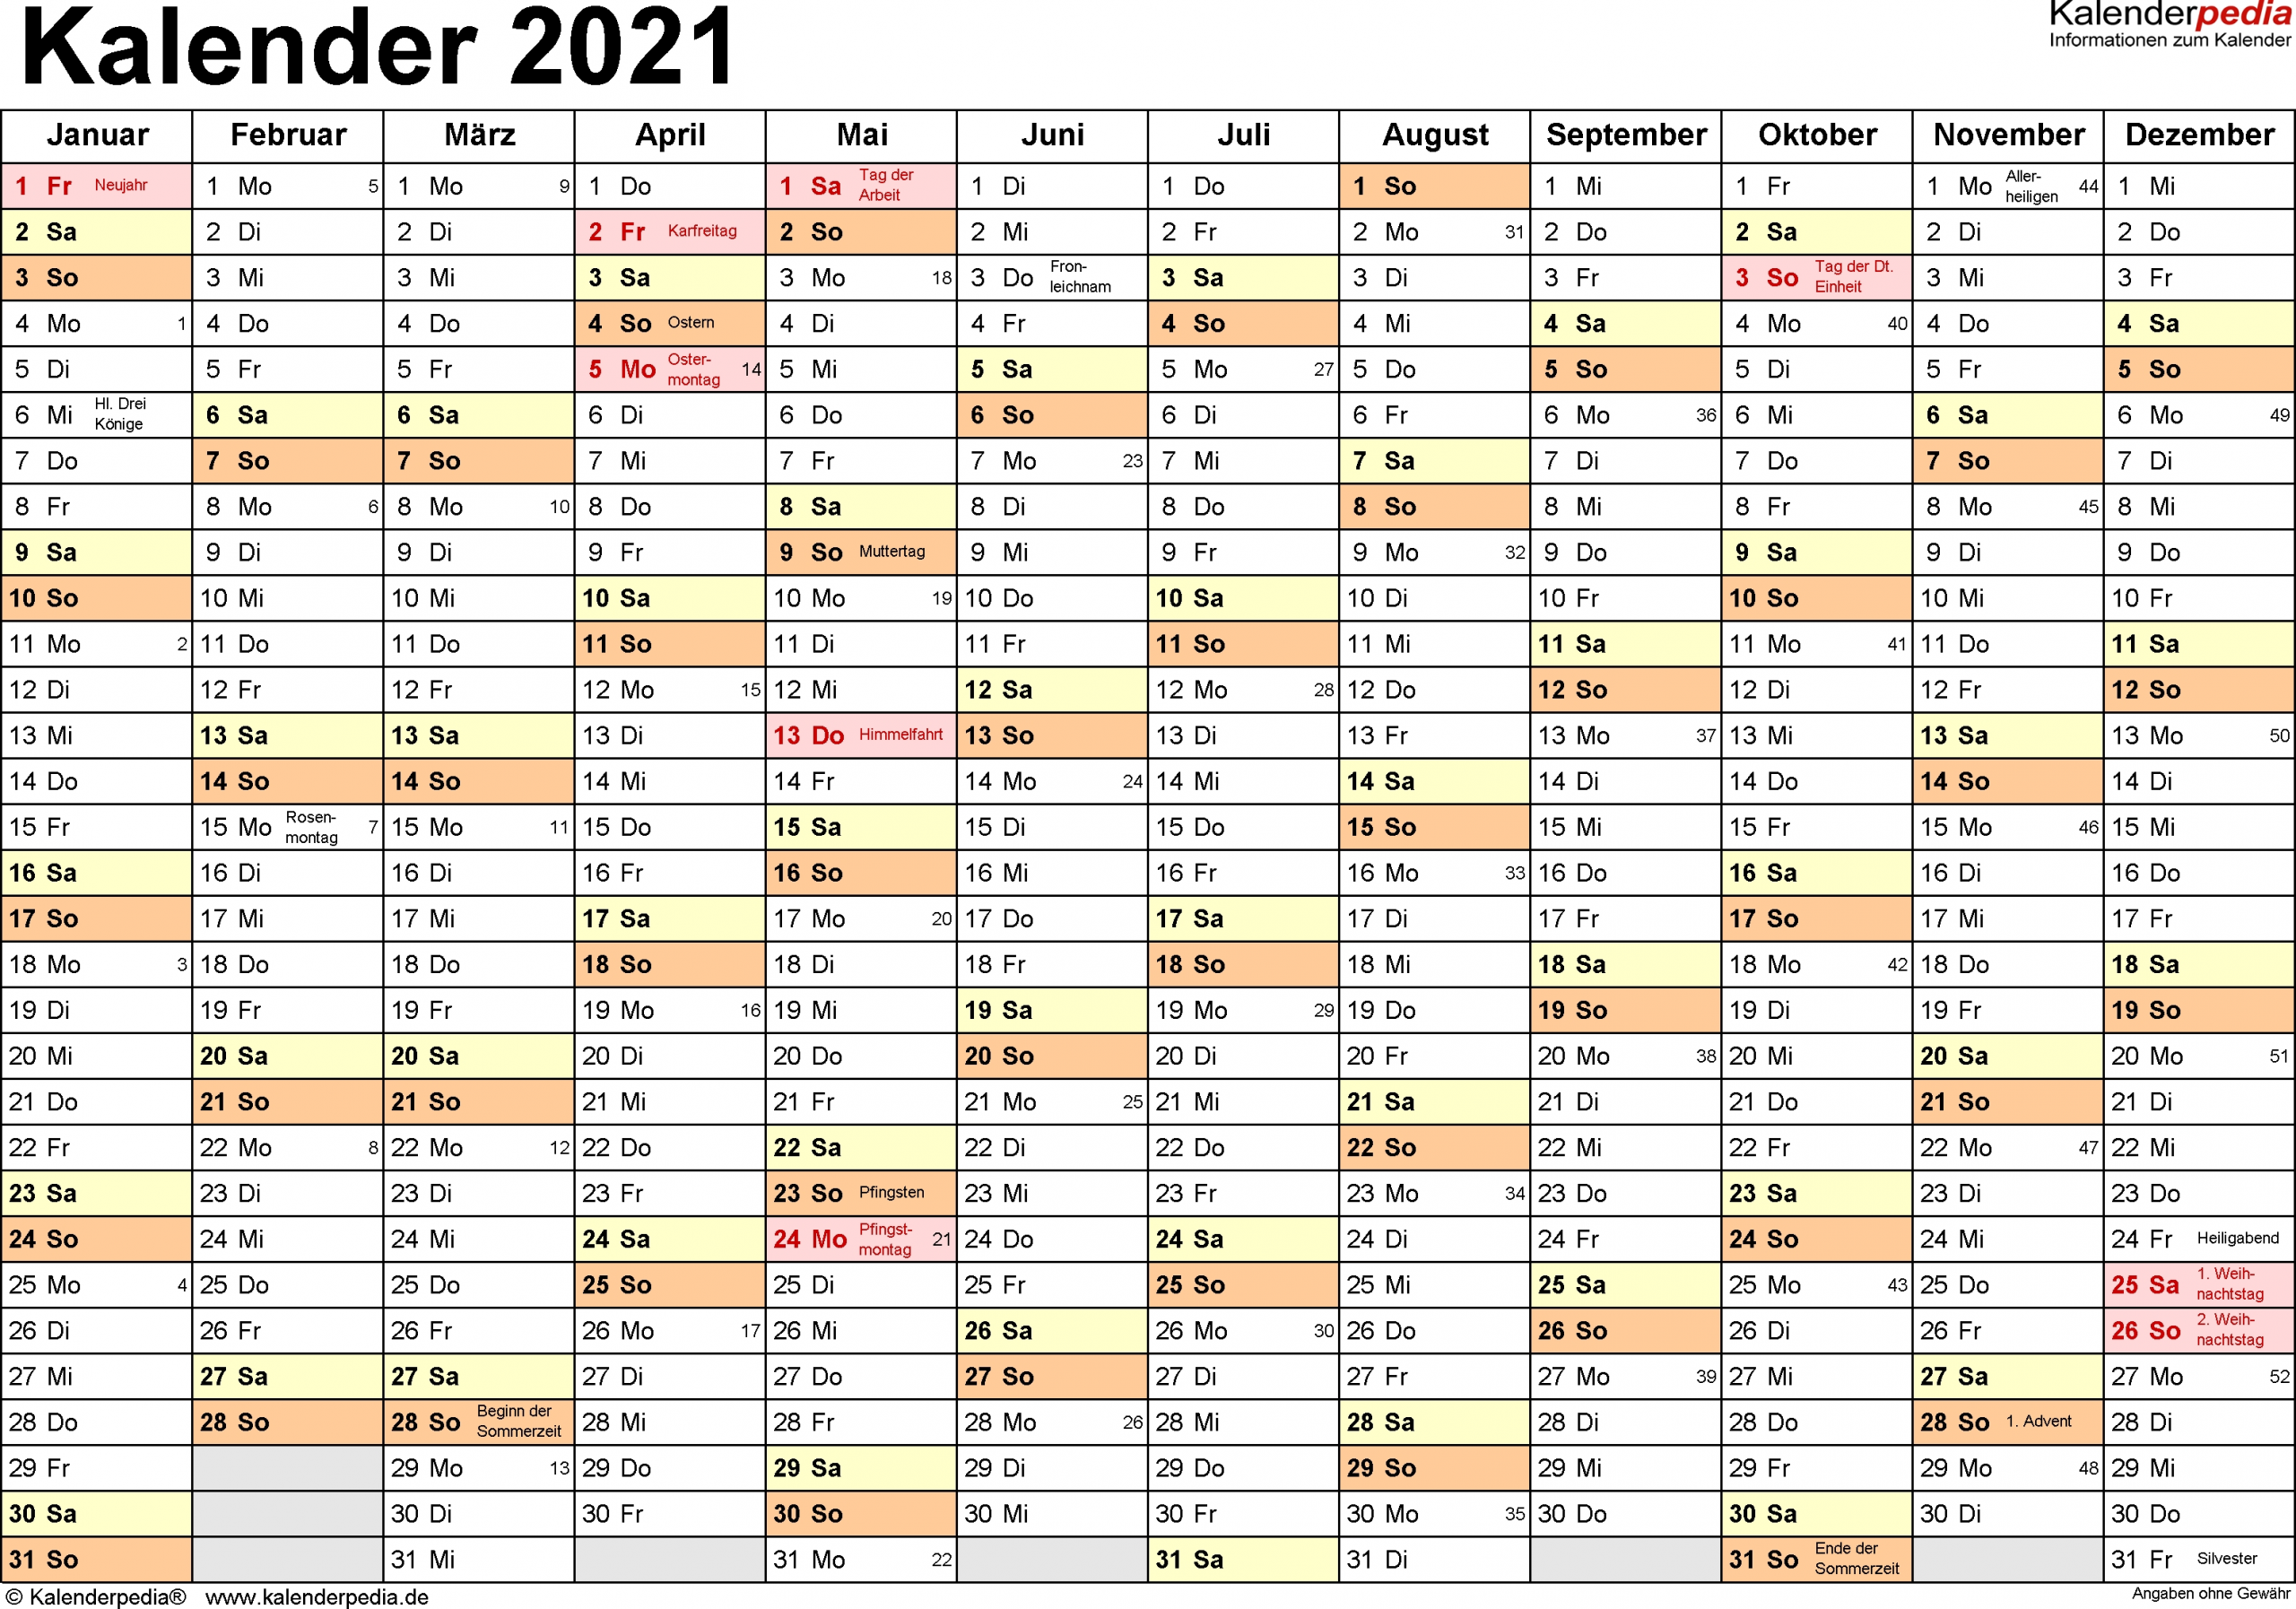 Get Kalender 2021 Zum Ausdrucken